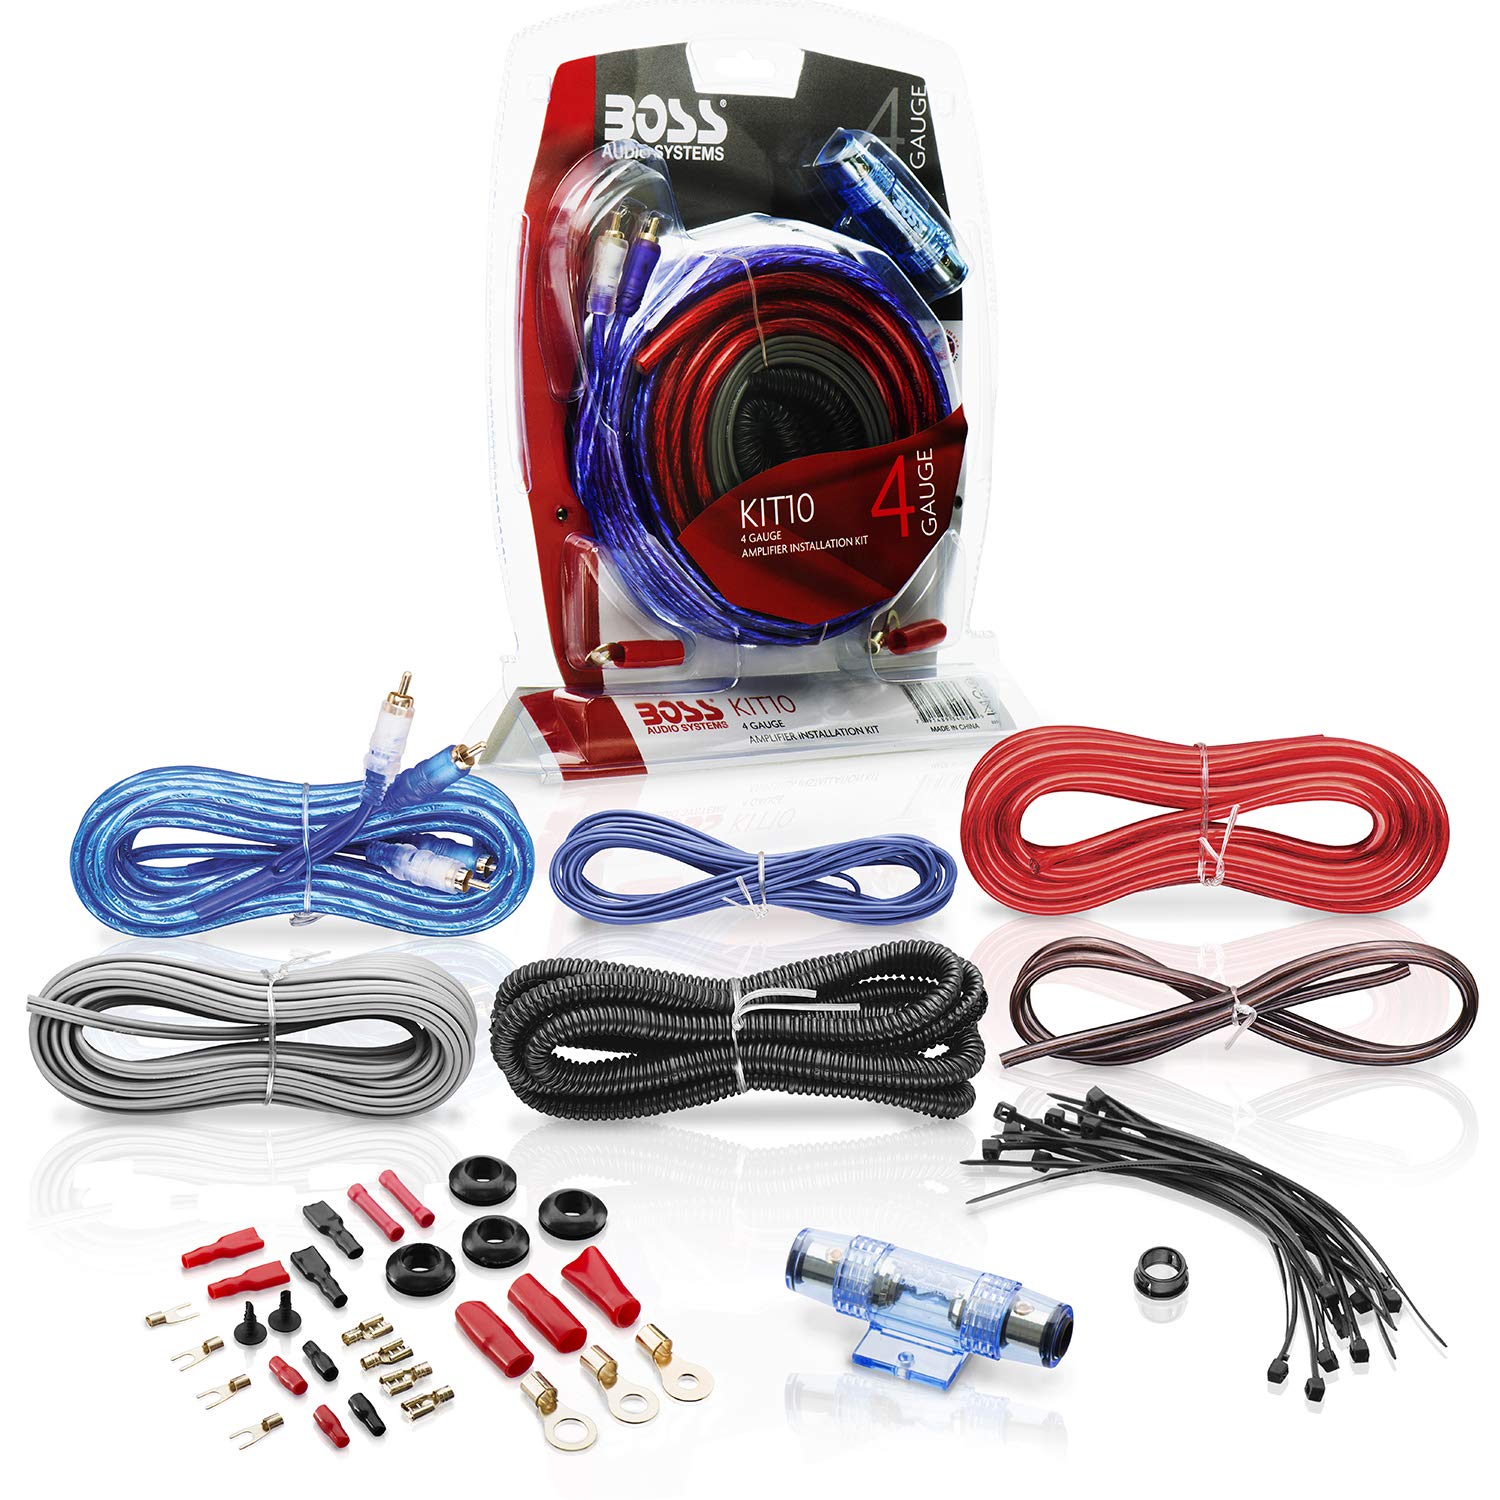 BOSS AUDIO KIT-10 4 Gauge 5,19 mm Auto Installations-Set Verstärker Endstufe Kabel Anschlusskabel Cinch Kabel